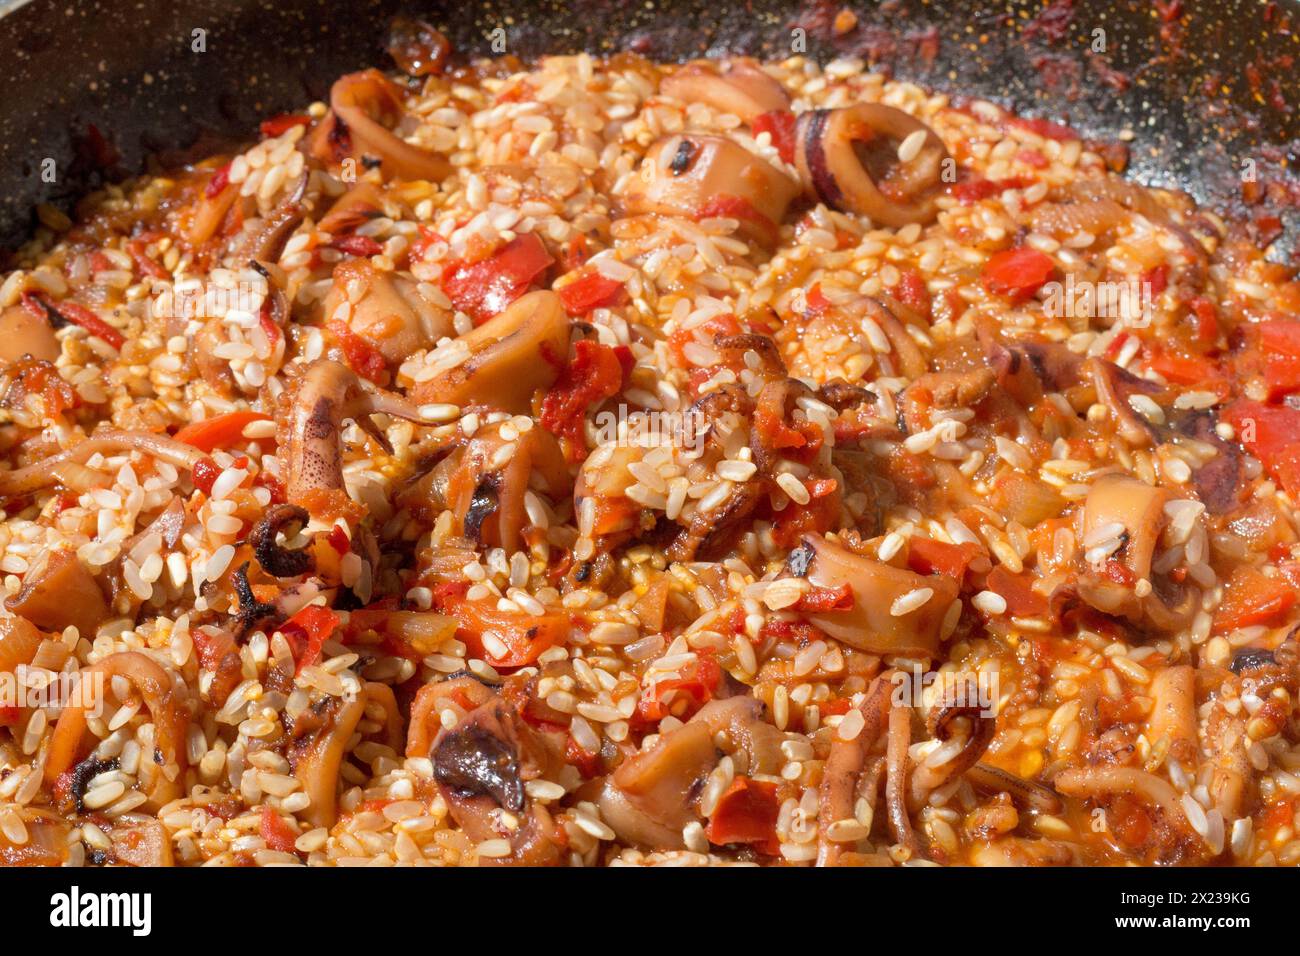 Assisti al momento cruciale mentre il riso si unisce al sofrito aromatico, esaltando l'essenza della tradizionale paella spagnola Foto Stock